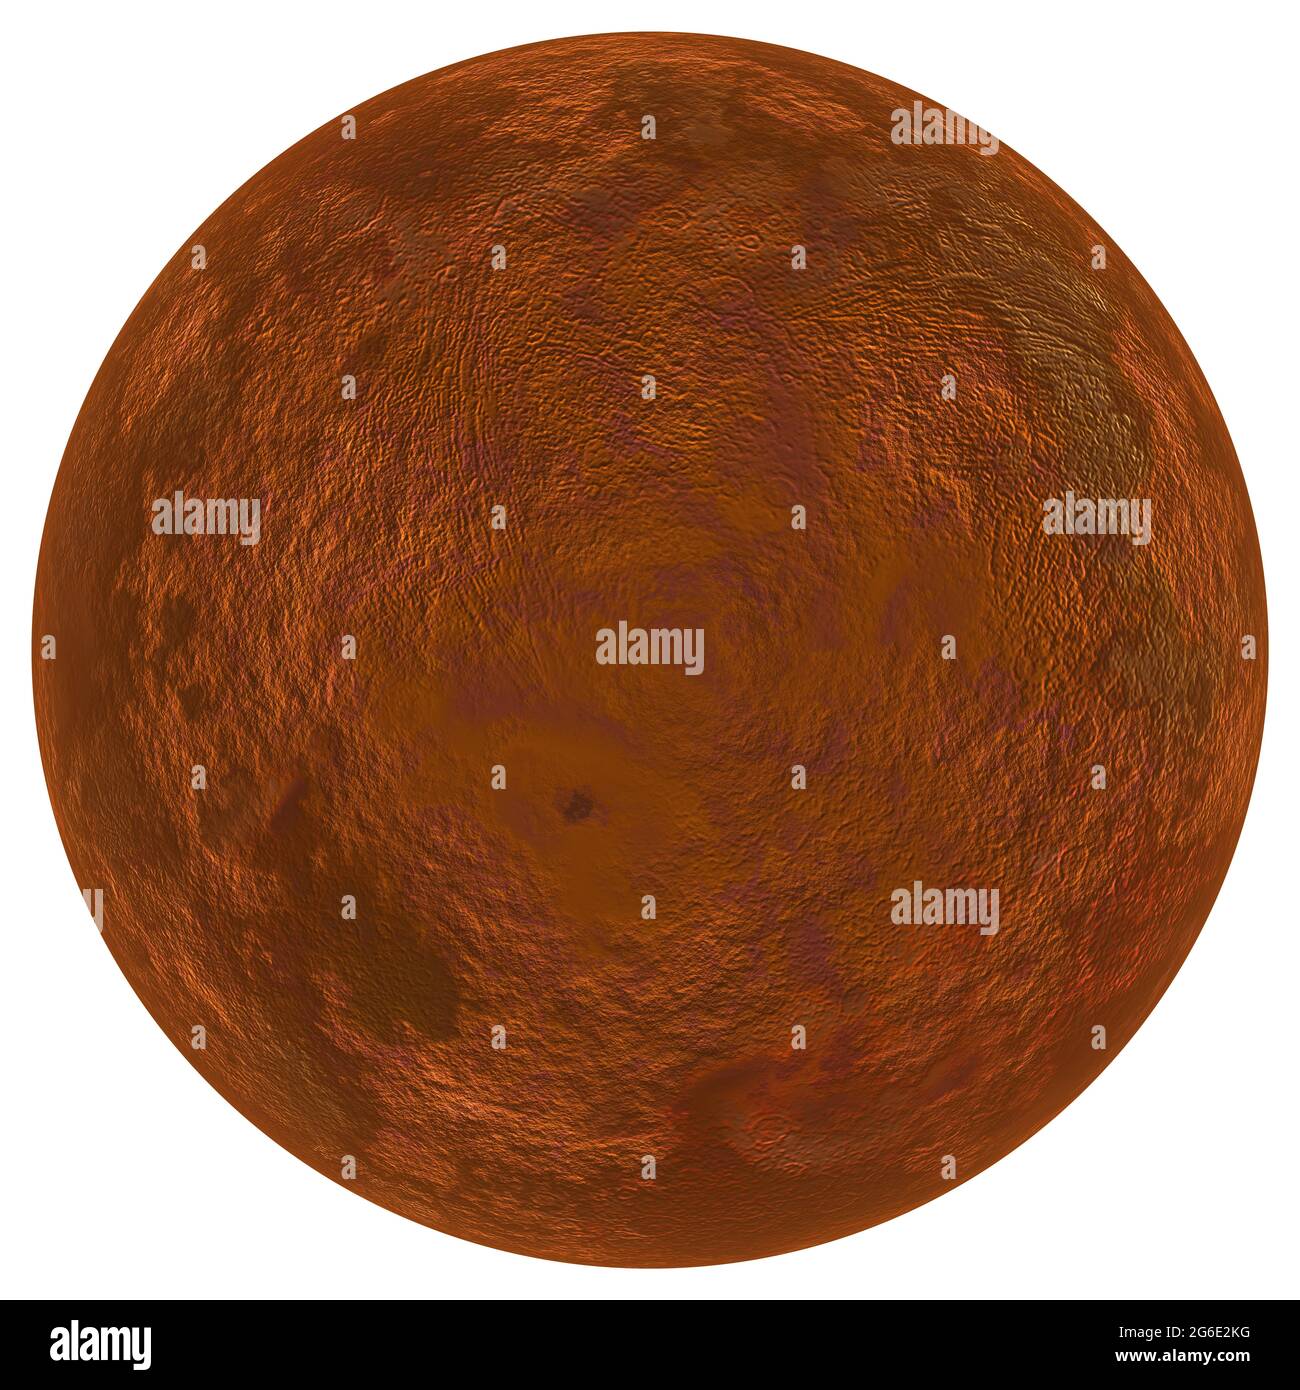 Digital erstellte hochauflösende Aufnahme des Planeten Pluto Stockfoto